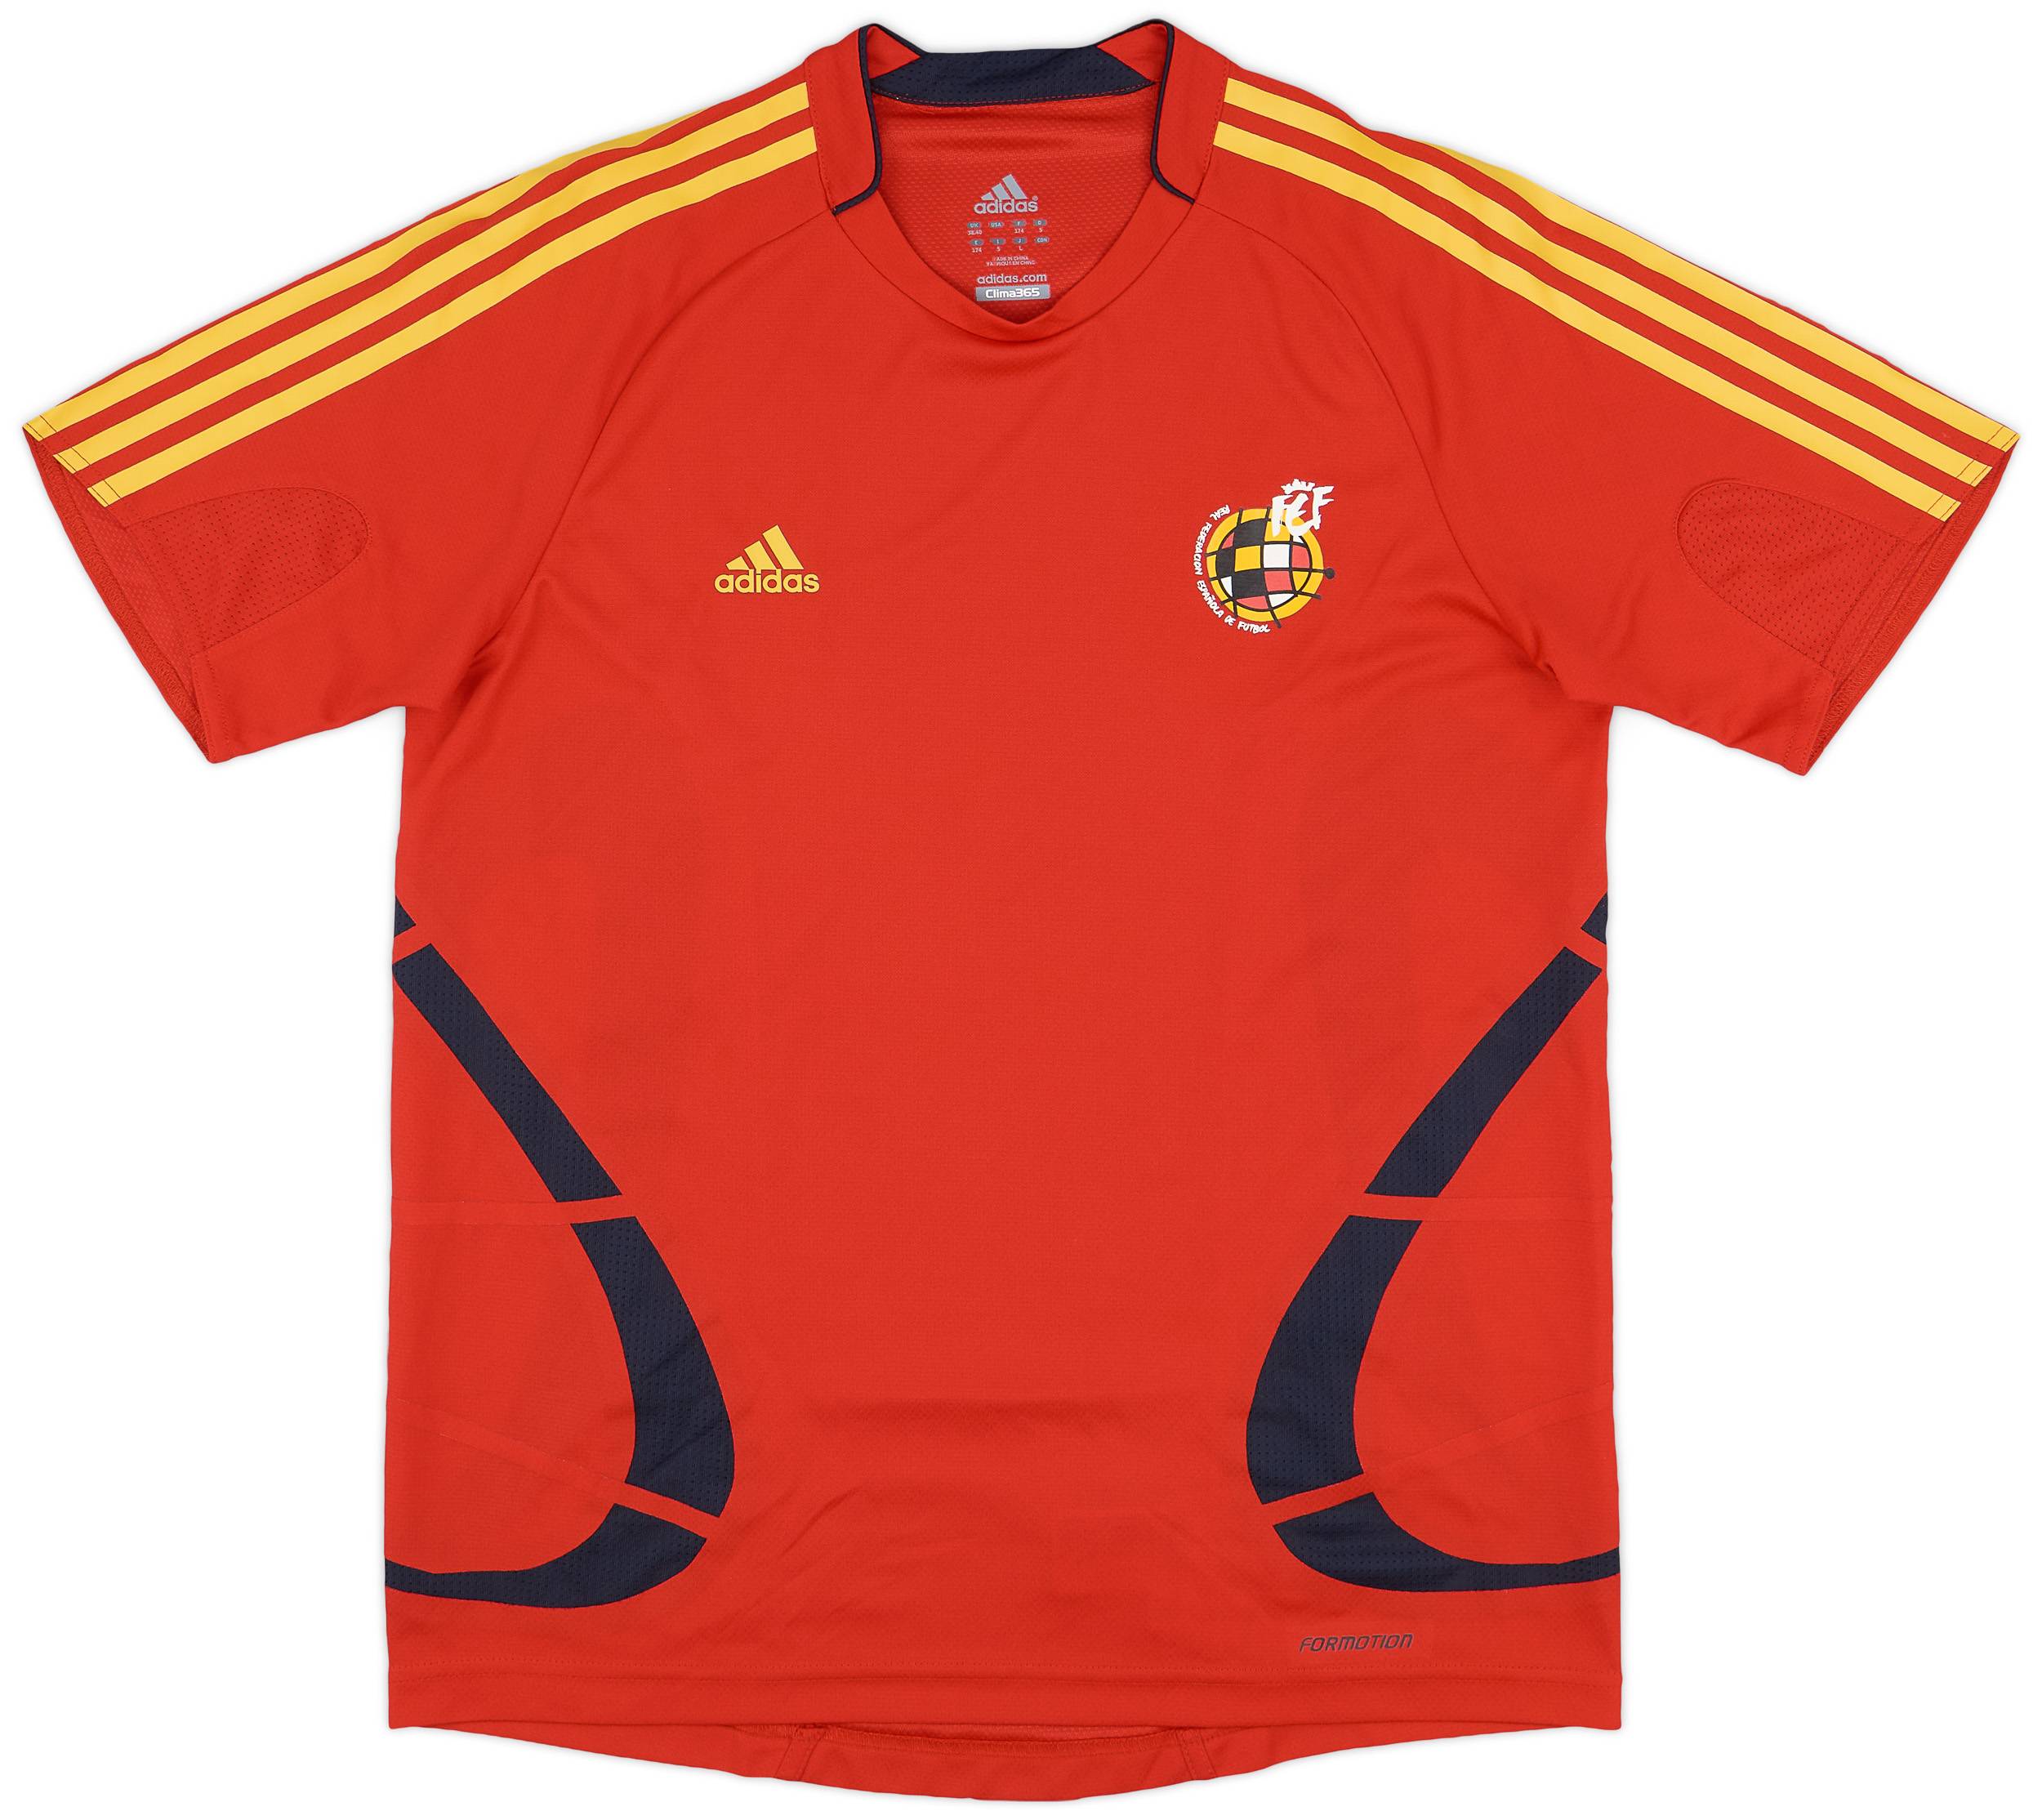 2008-09 Spain adidas Formotion Training Shirt - 10/10 - (M)